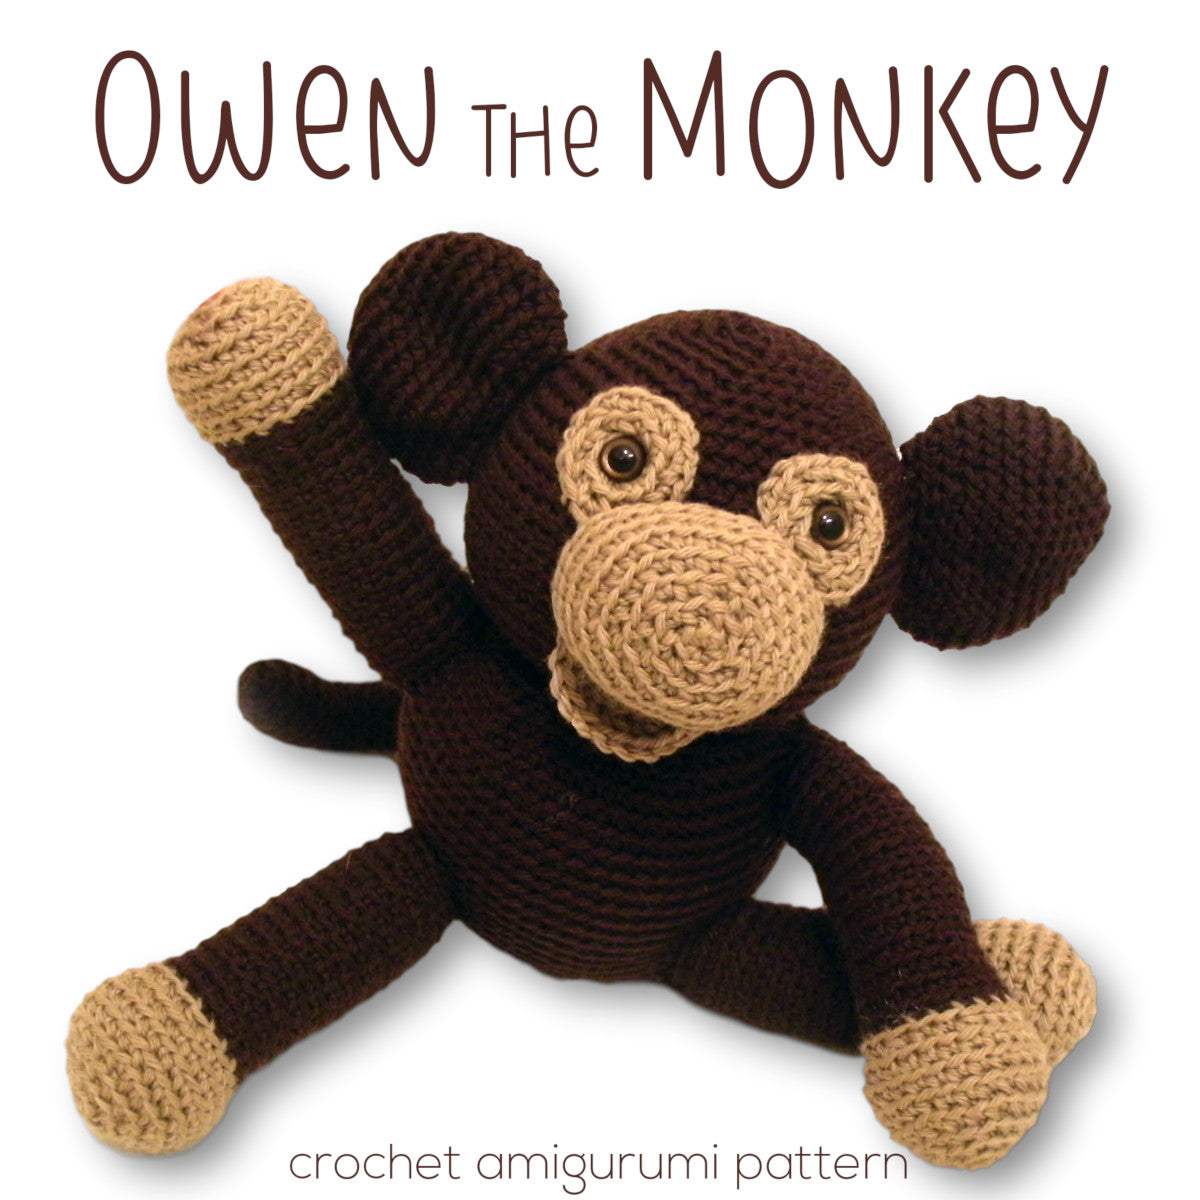 Owen the Monkey Crochet Amigurumi Pattern